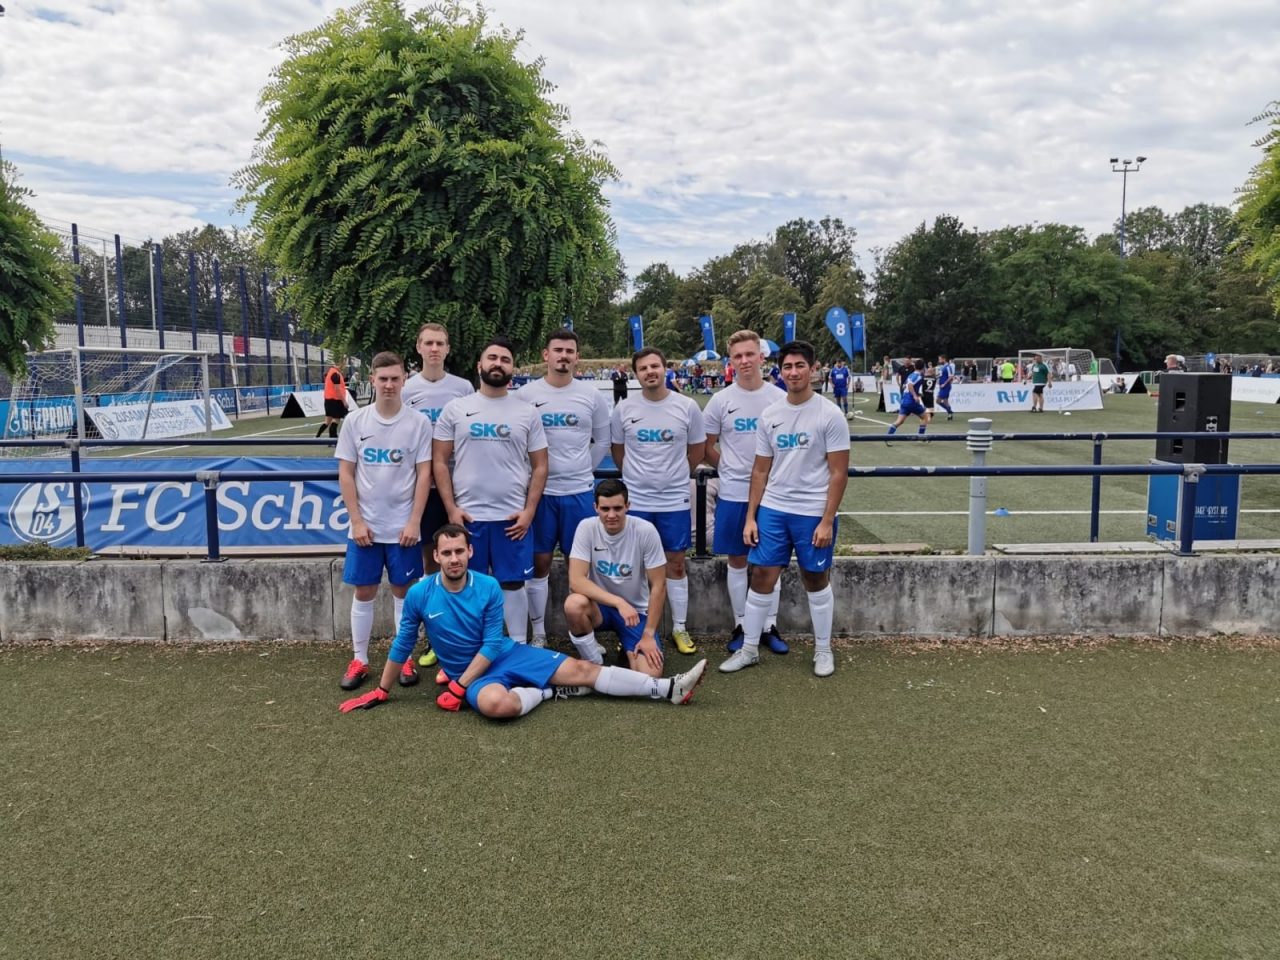 SponsorCup auf Schalke 2019